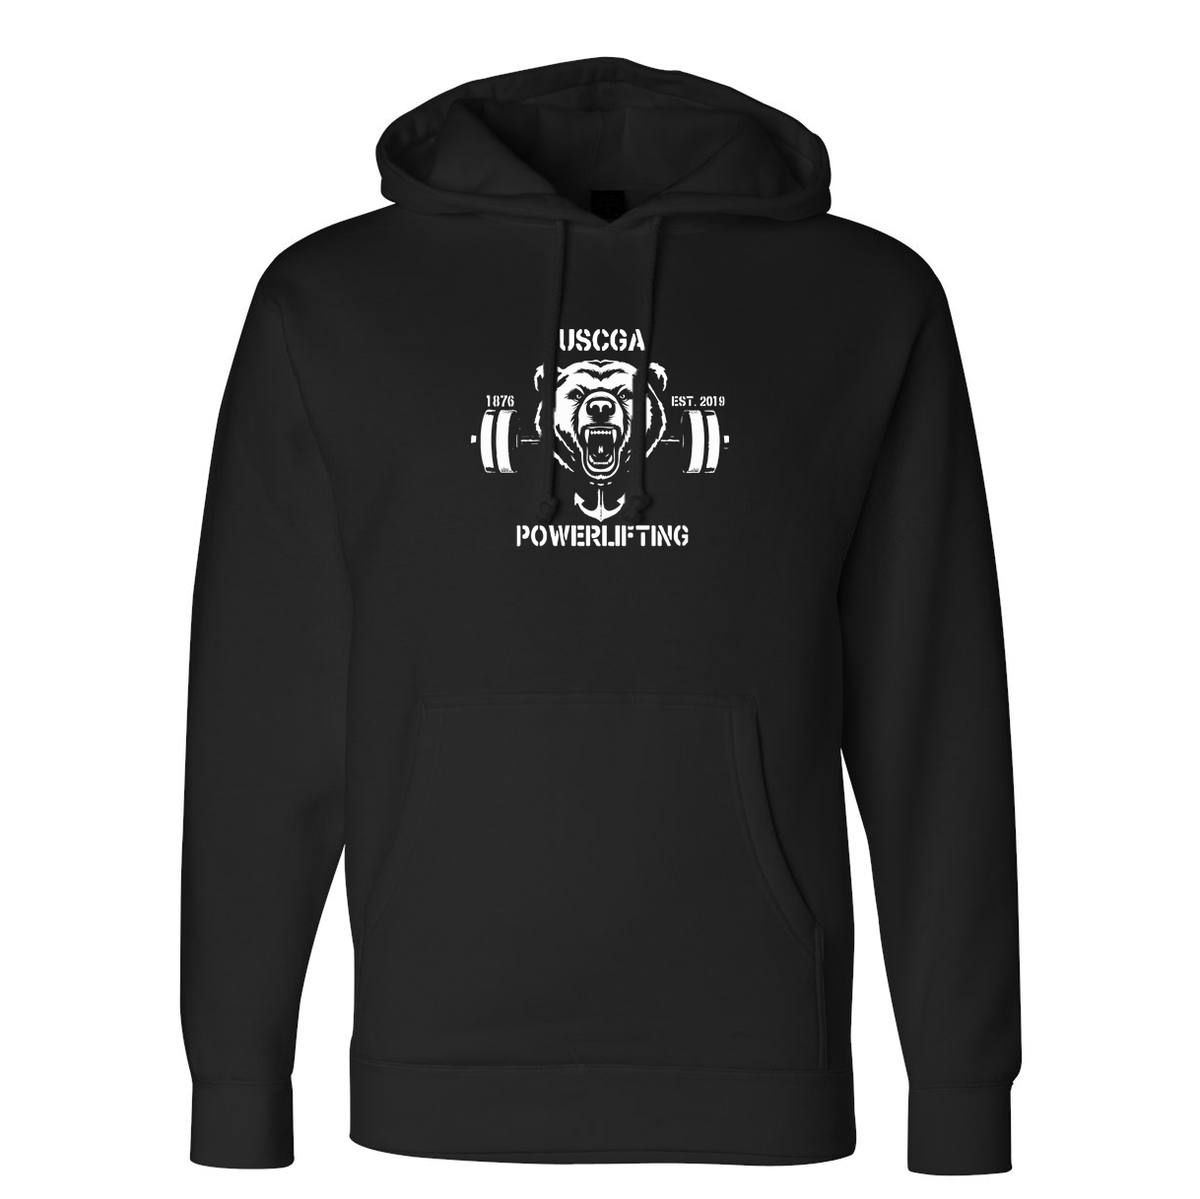 USCGA Powerlifting & Bodybuilding Club Midweight Hooded Sweatshirt